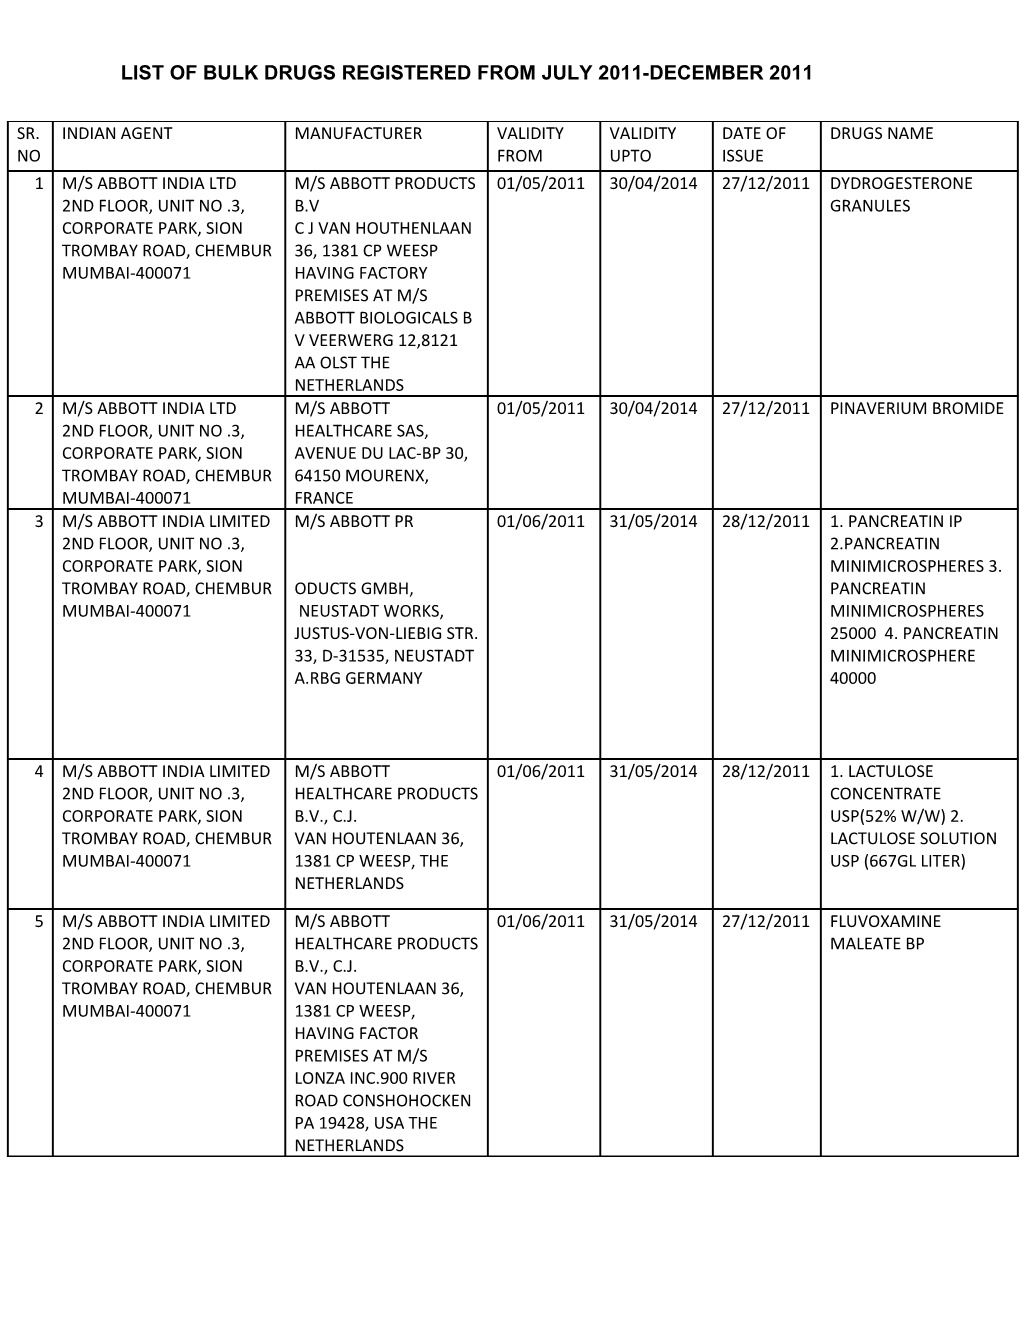 List of Bulk Drugs Registered from July 2011-December 2011